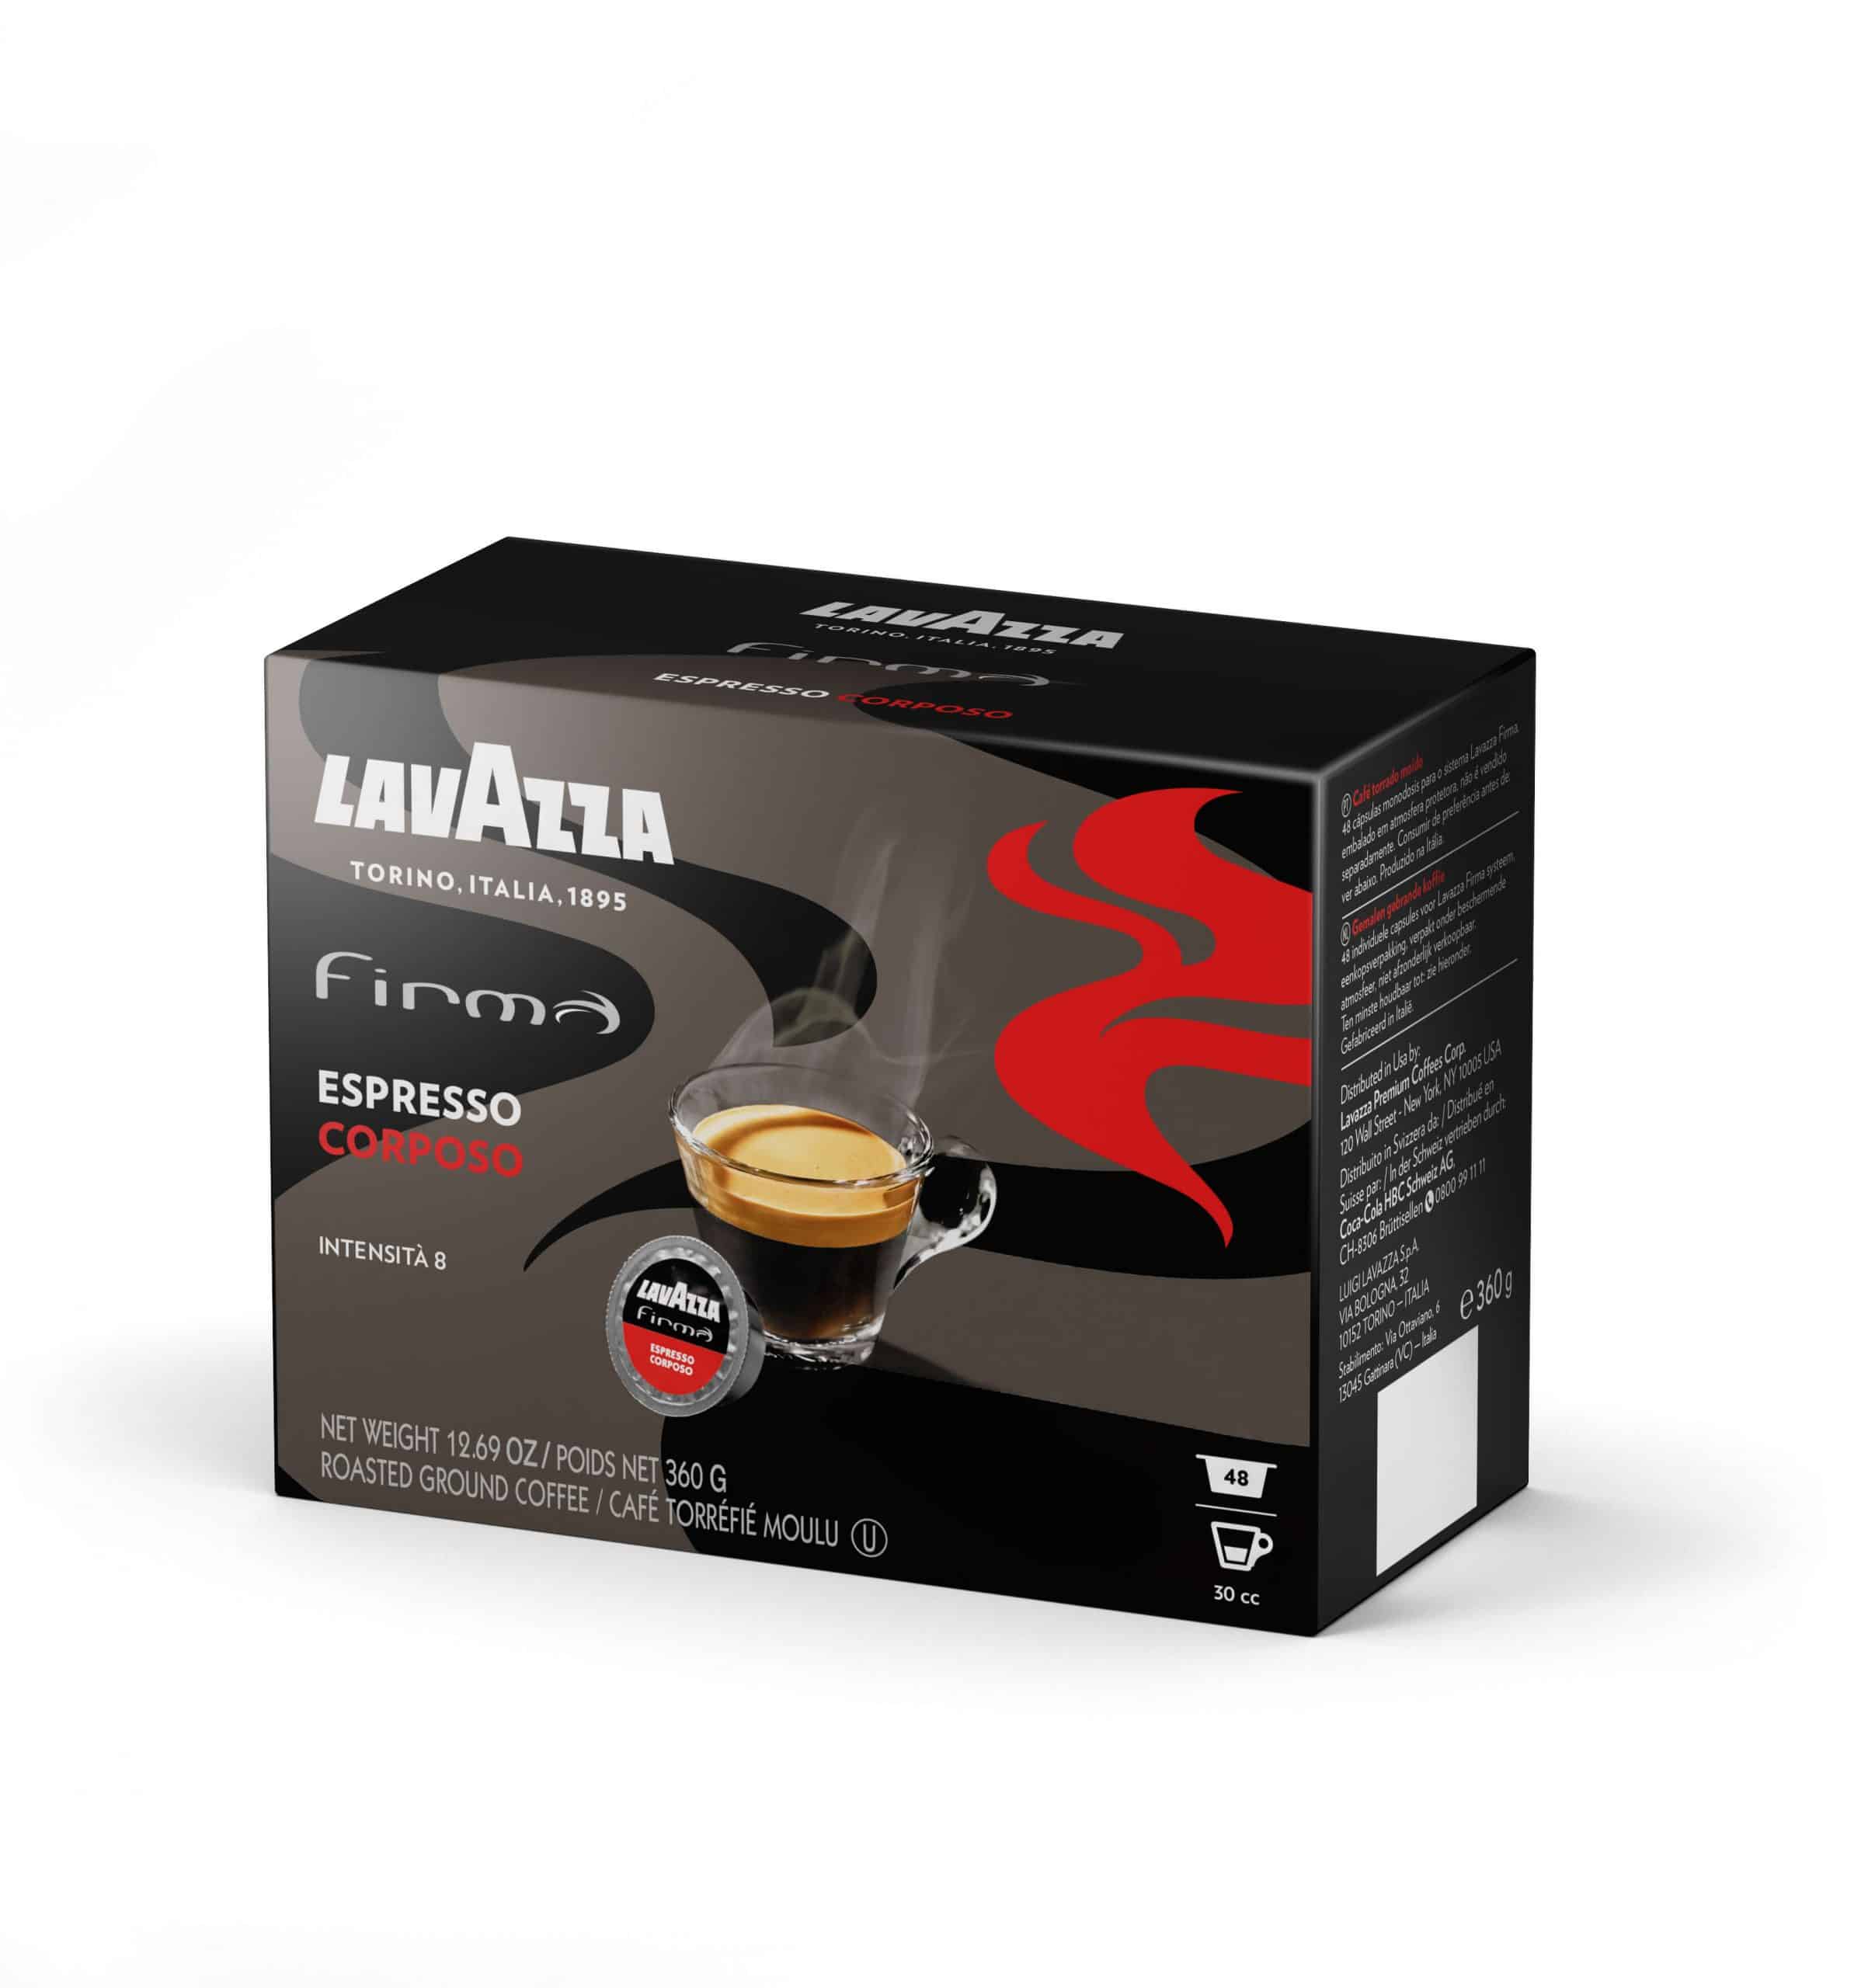 LAVAZZA FIRMA + CAPPUCCINATORE - DI TO BREAK - Macchine del caffè per Casa, Azienda